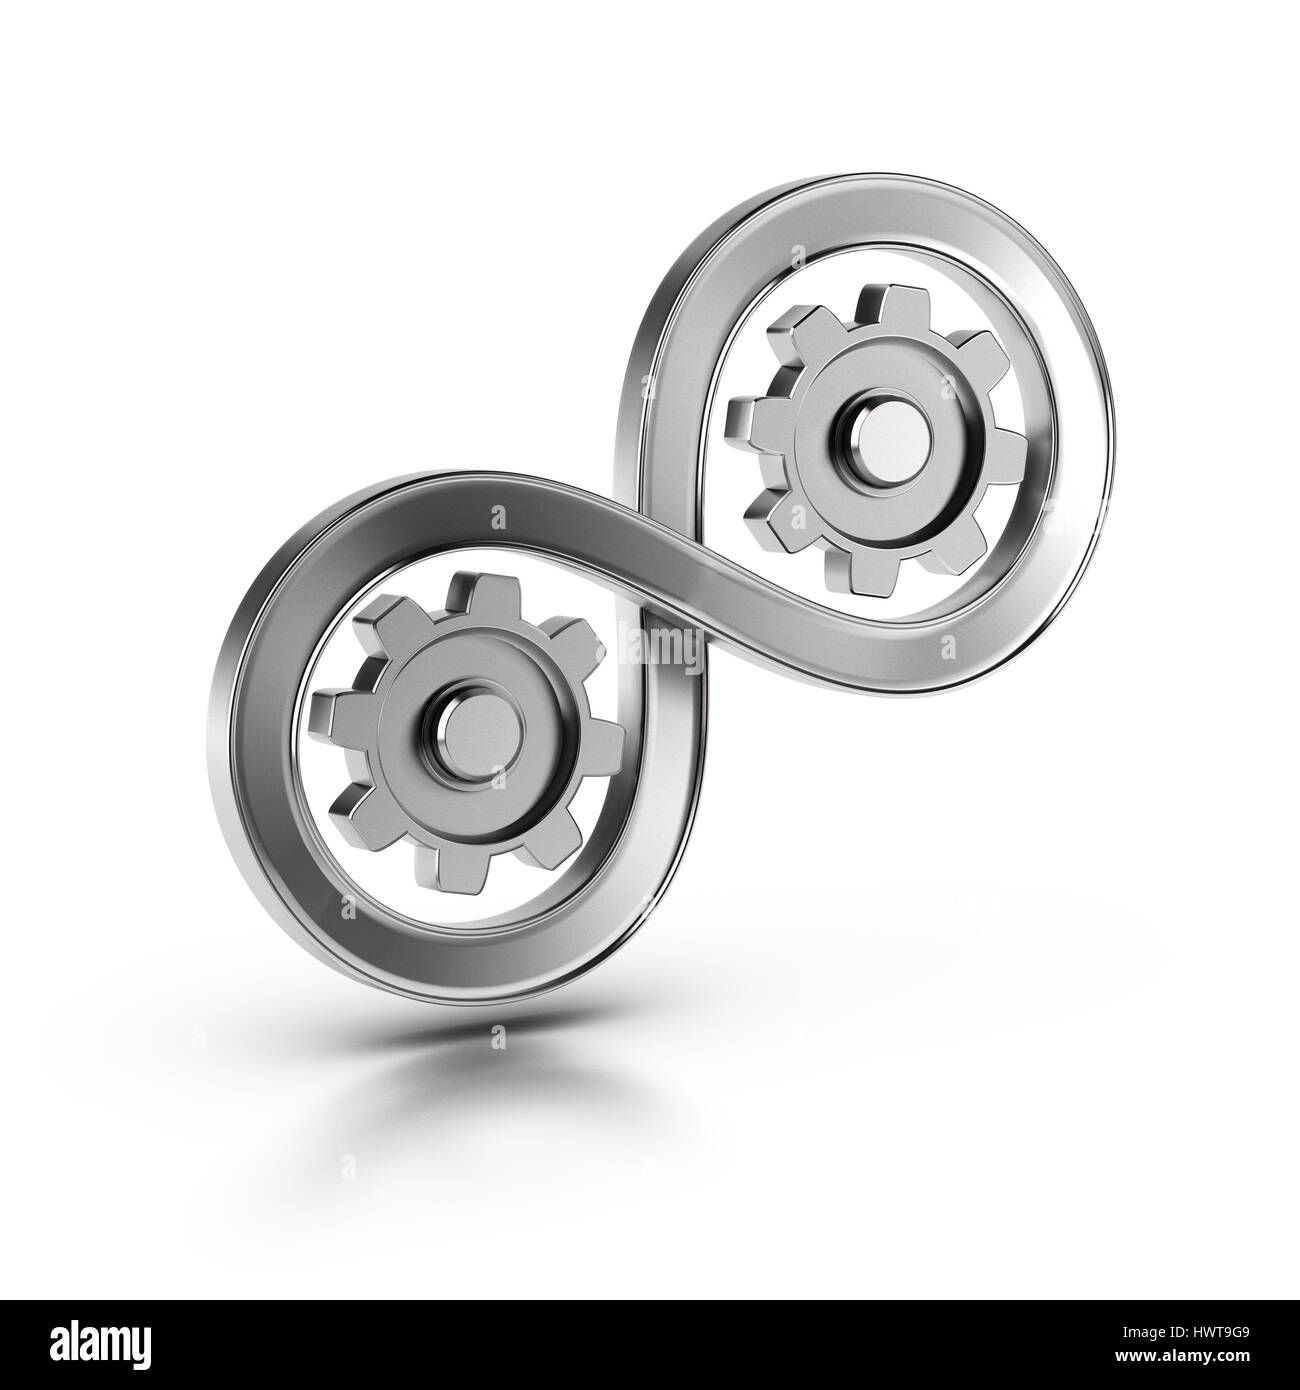 3d illustration d'un symbole infini et roue dentée sur fond blanc, concept de l'amélioration continue des processus de fabrication.. Banque D'Images